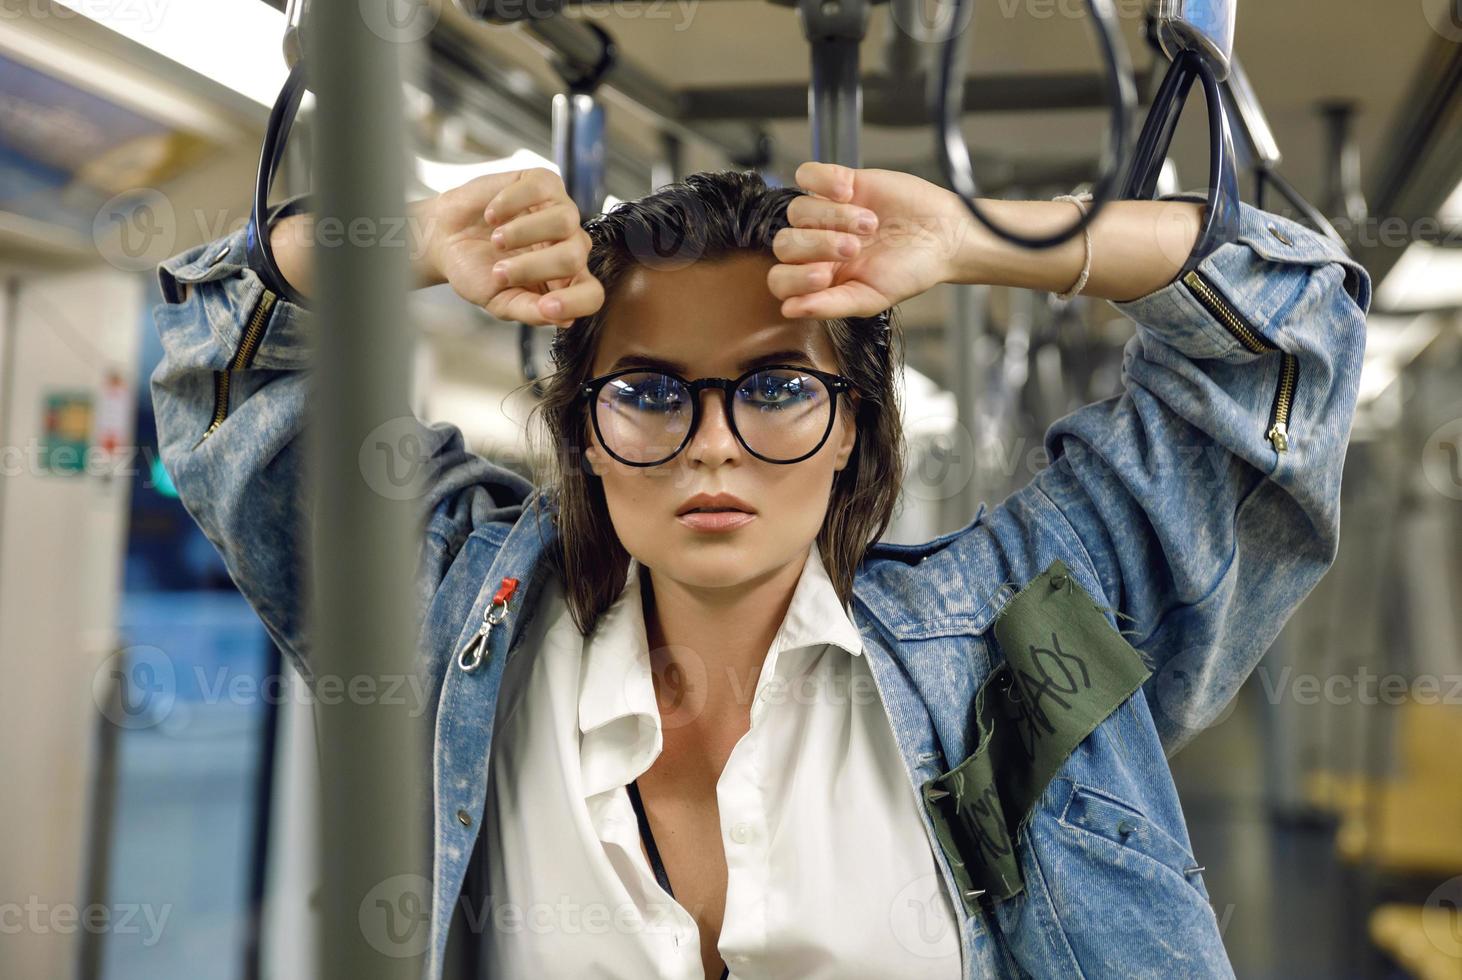 sexy model- is poseren in vervoer van metro trein foto